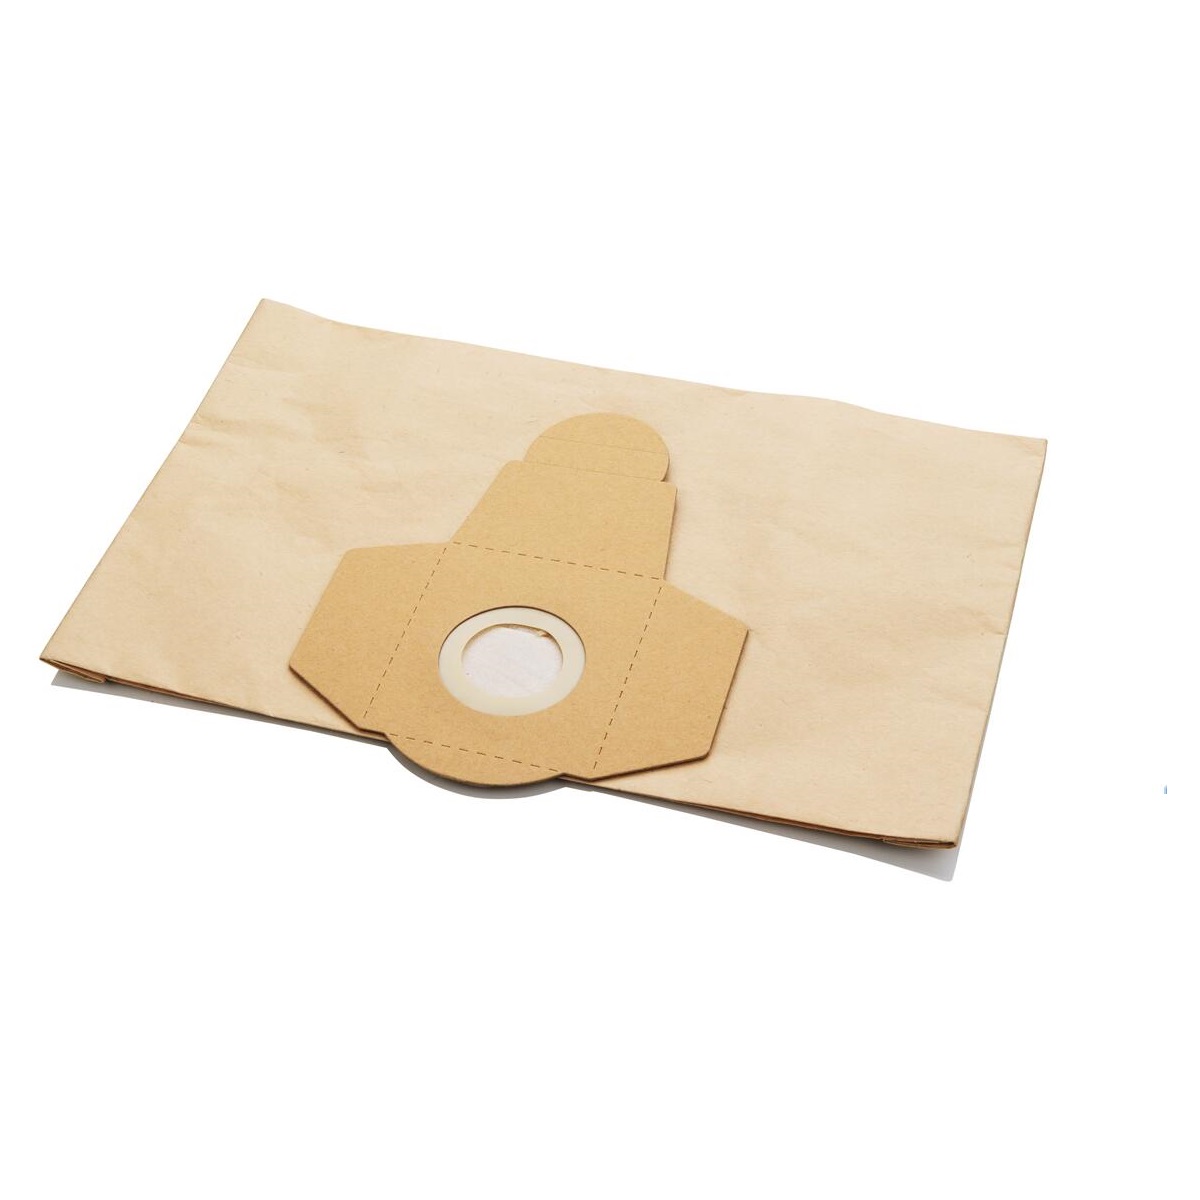 Papírové sáčky na prach do vysavače, 3 ks/bal.AE7V100-10F, ASIST  AE7A015